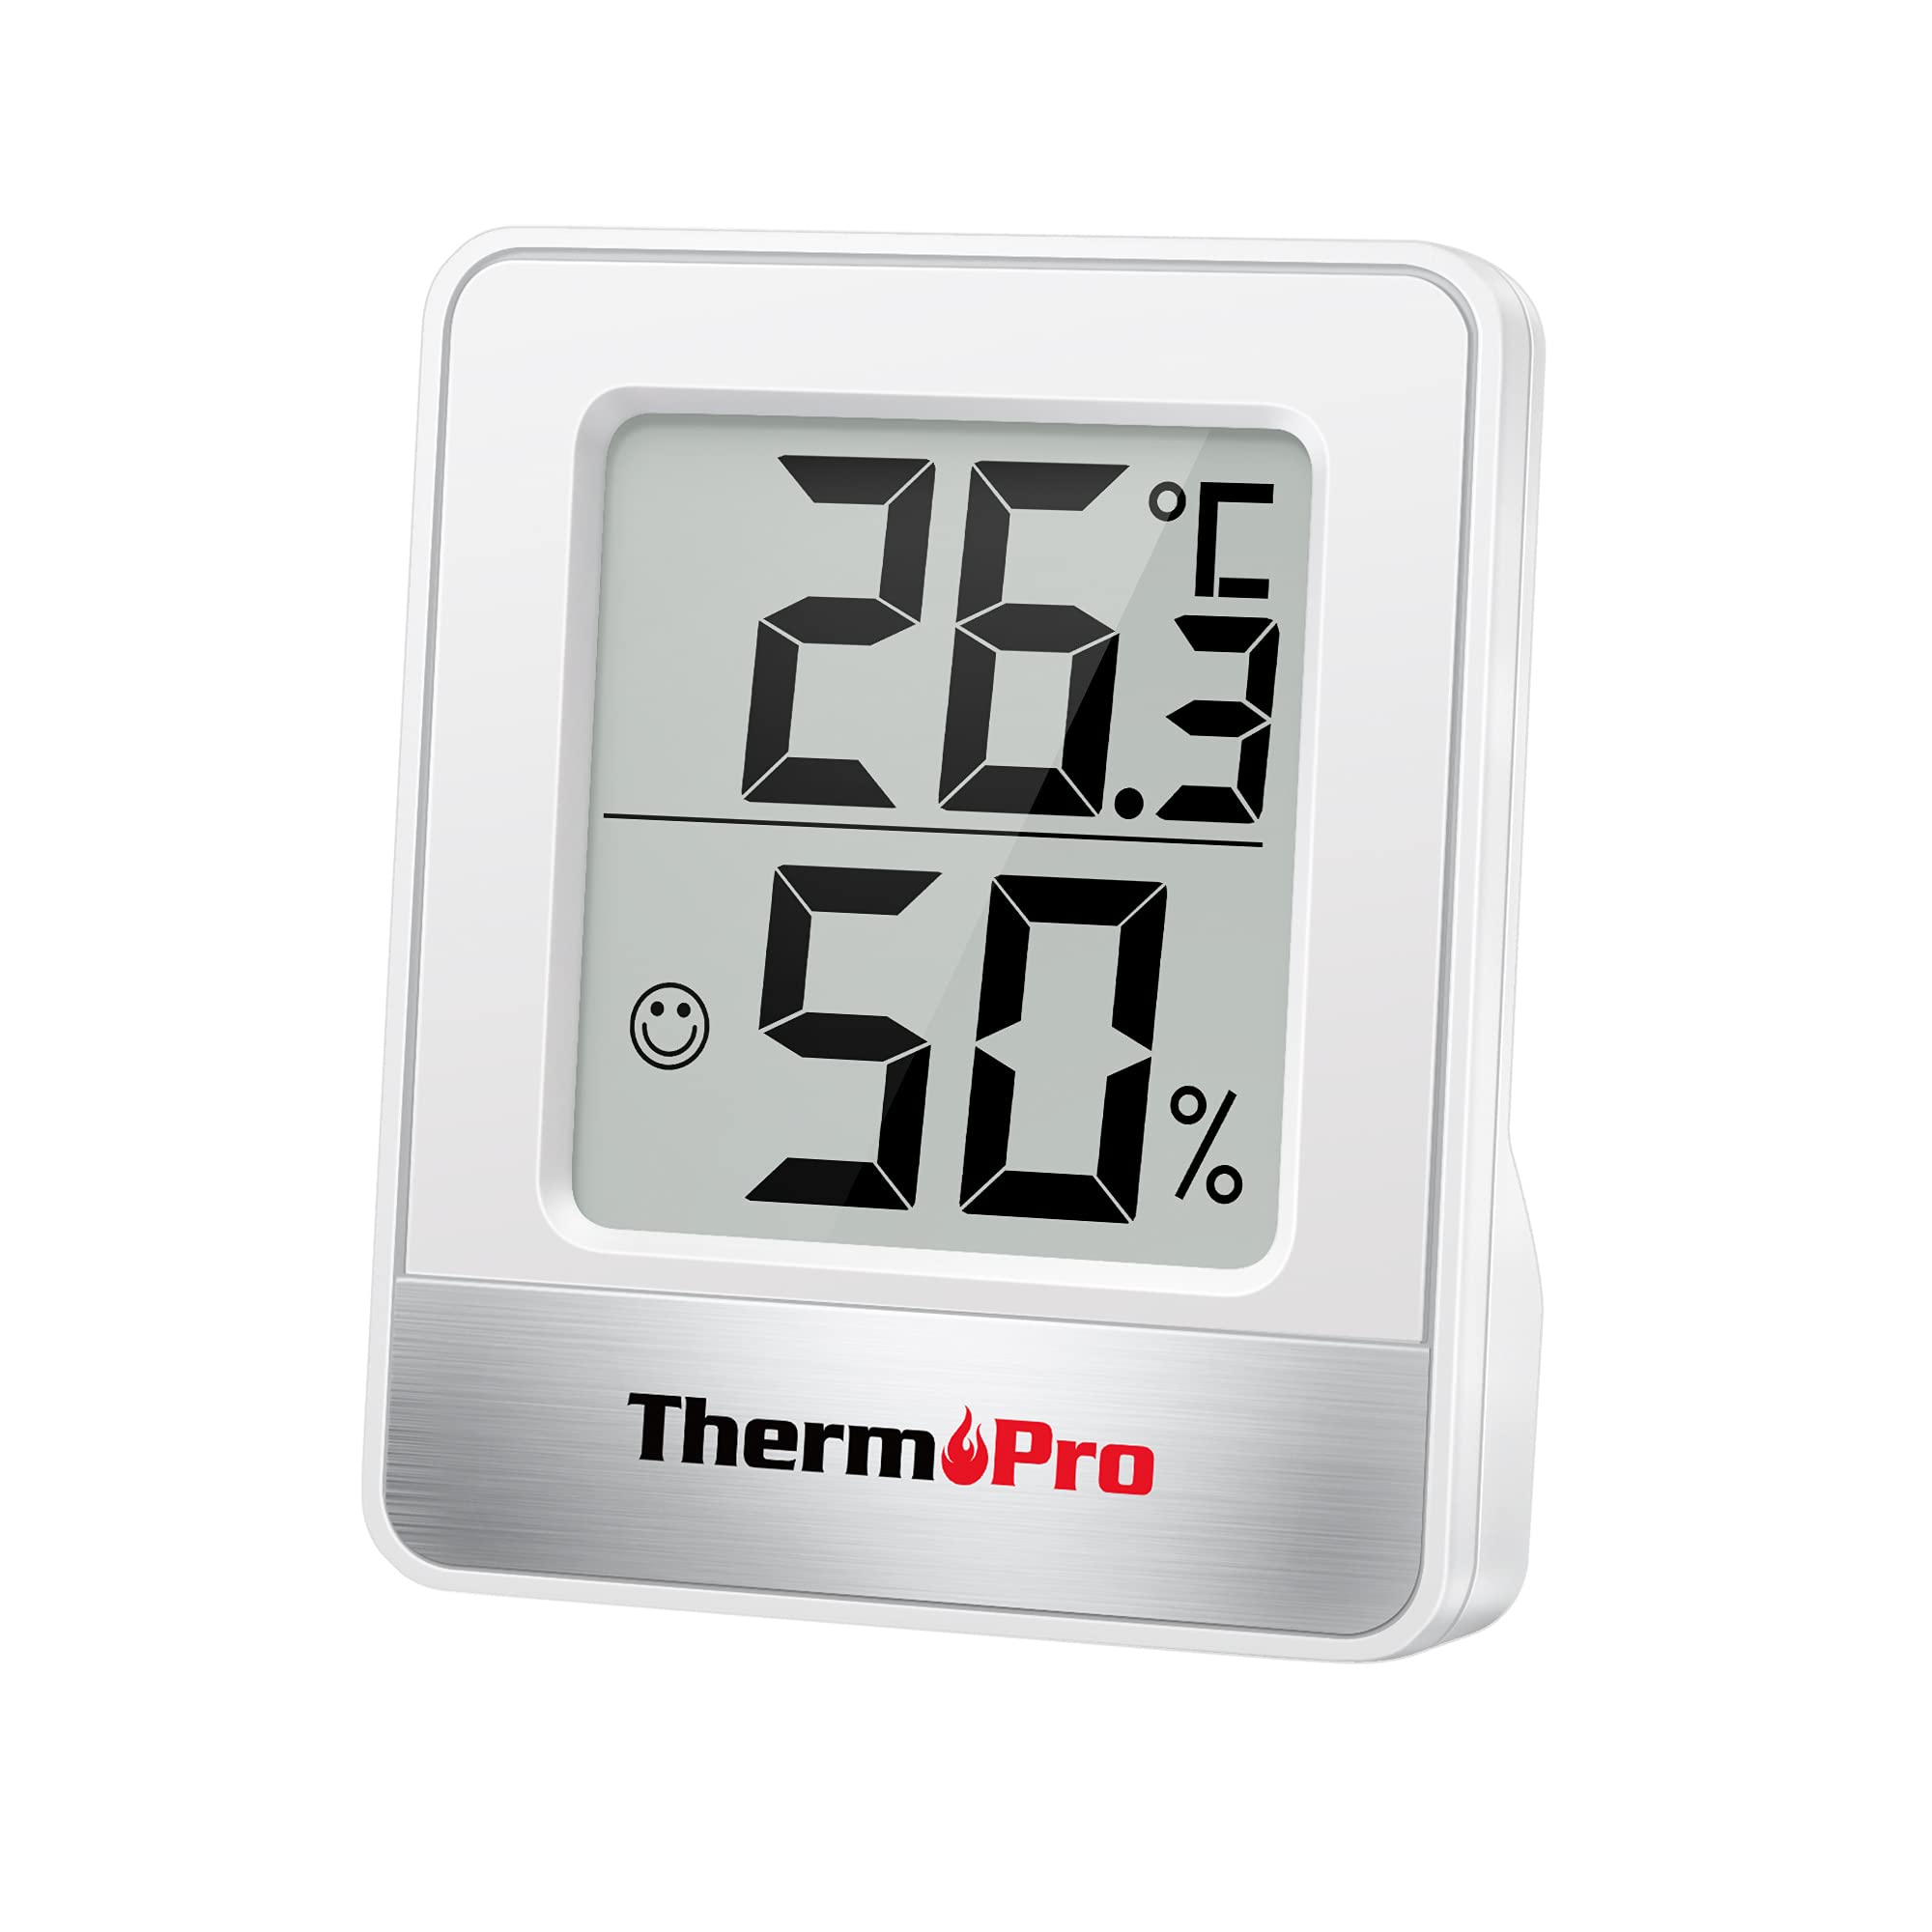 Exclusif ThermoPro TP49 Petit Hygromètre Numérique Thermomètre Intérieur Thermomètre D´ambiance Moniteur de Température et Humidimètre pour Le Confort du Bureau à Domicile Thermomètre de Reptile V03kyqXb3 Vente chaude